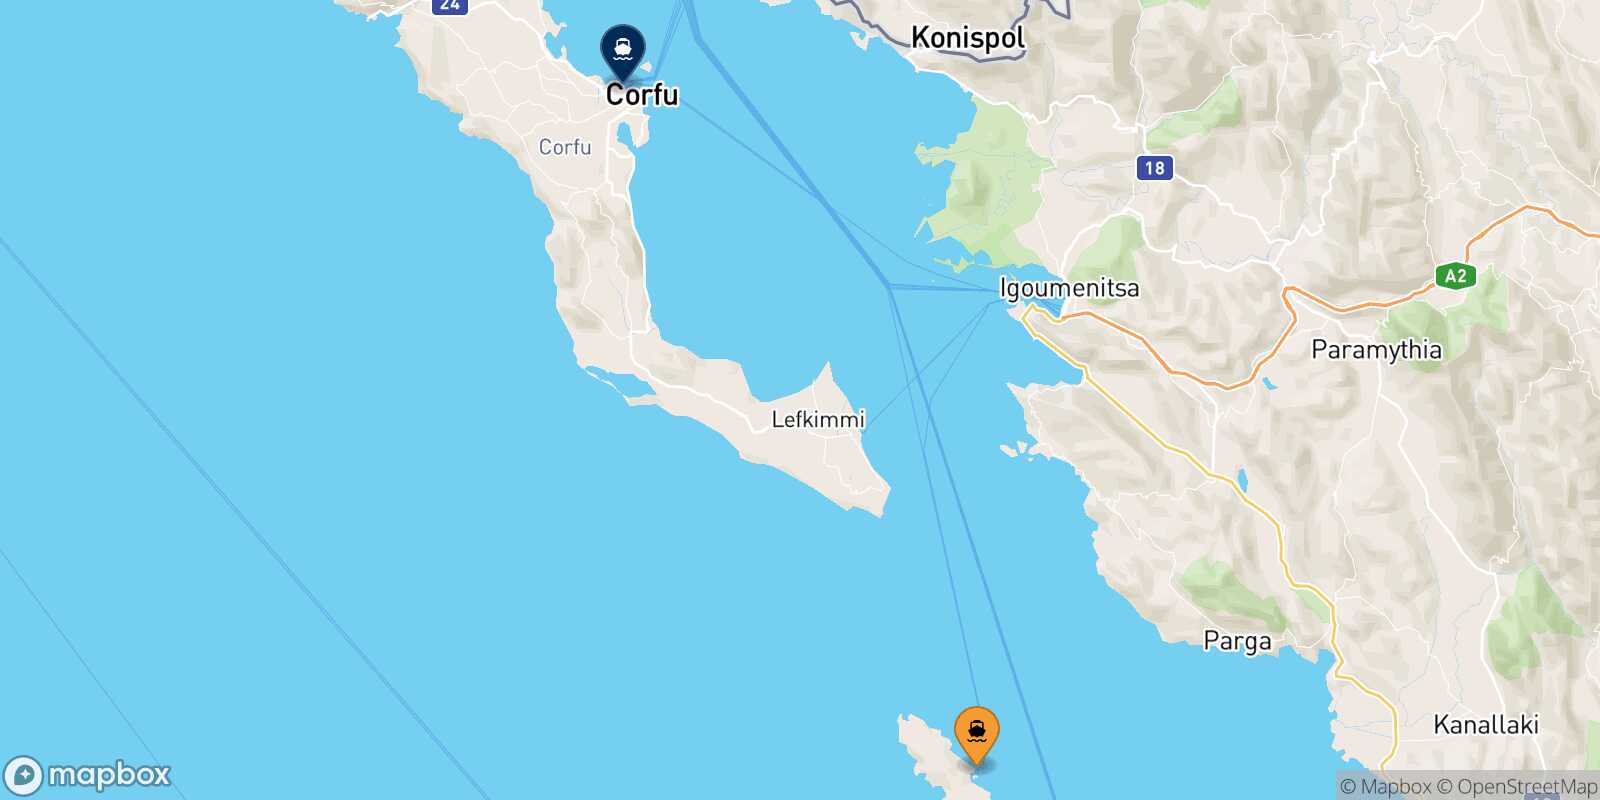 Mapa de la ruta Paxos Corfu